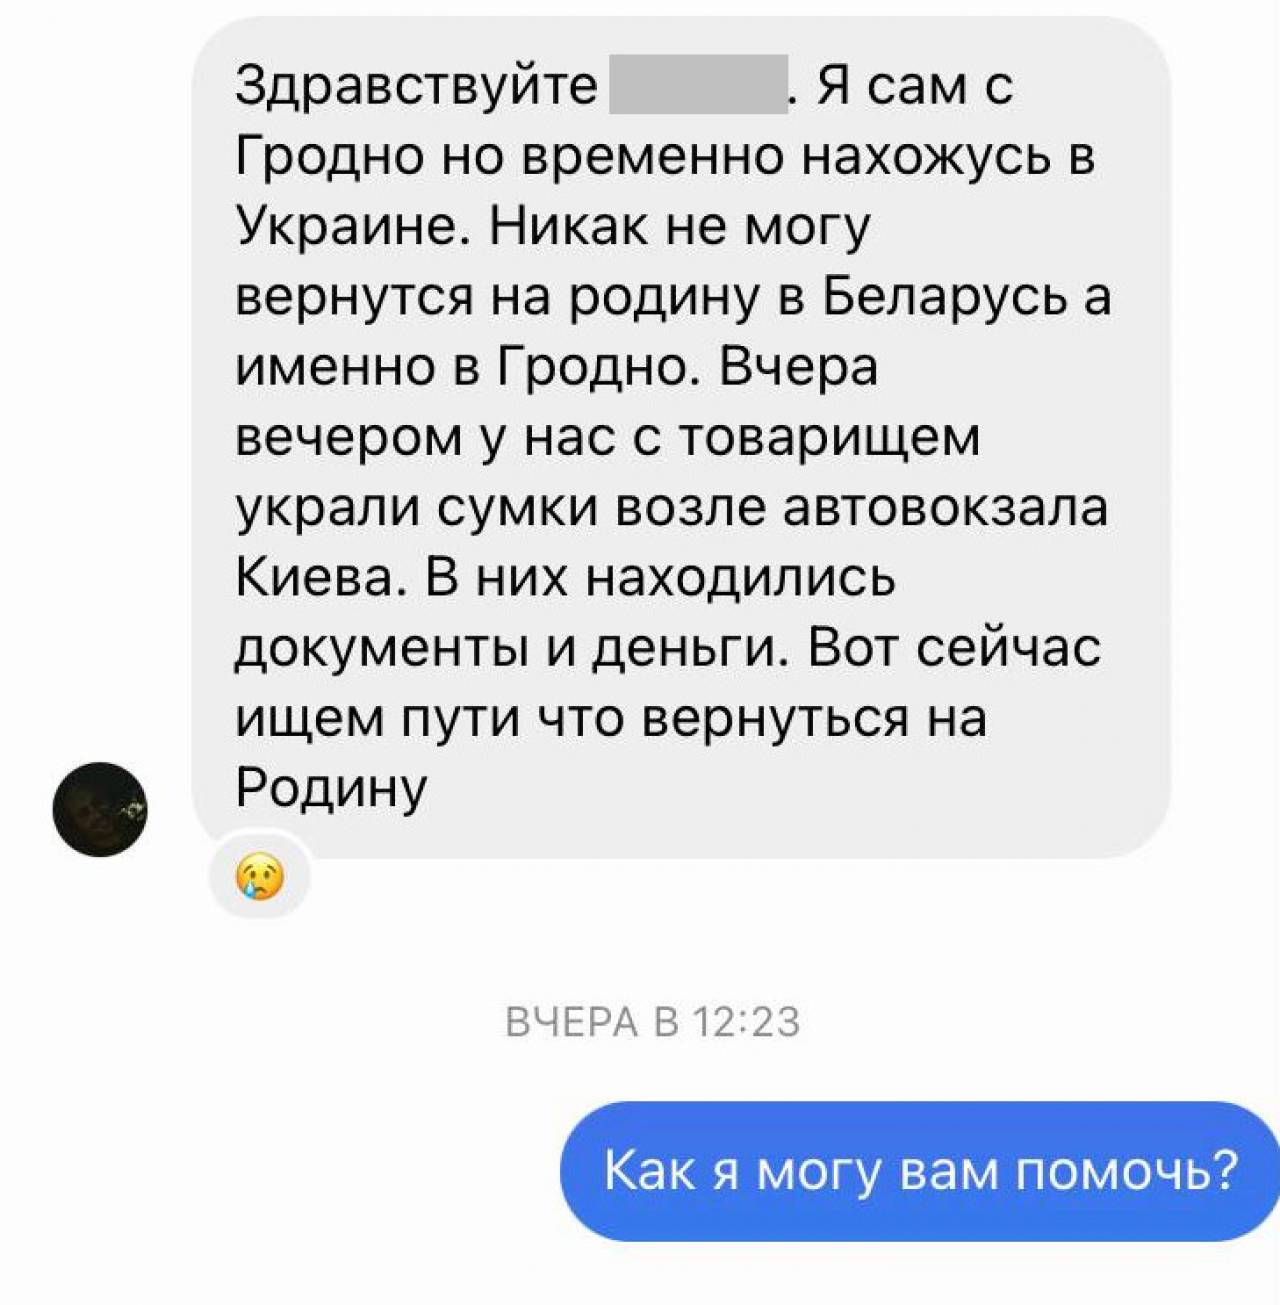 «Застрял» в Киеве, нужны деньги на дорогу в Гродно»: Как в соцсетях гродненцы начали «разводить» гродненцев